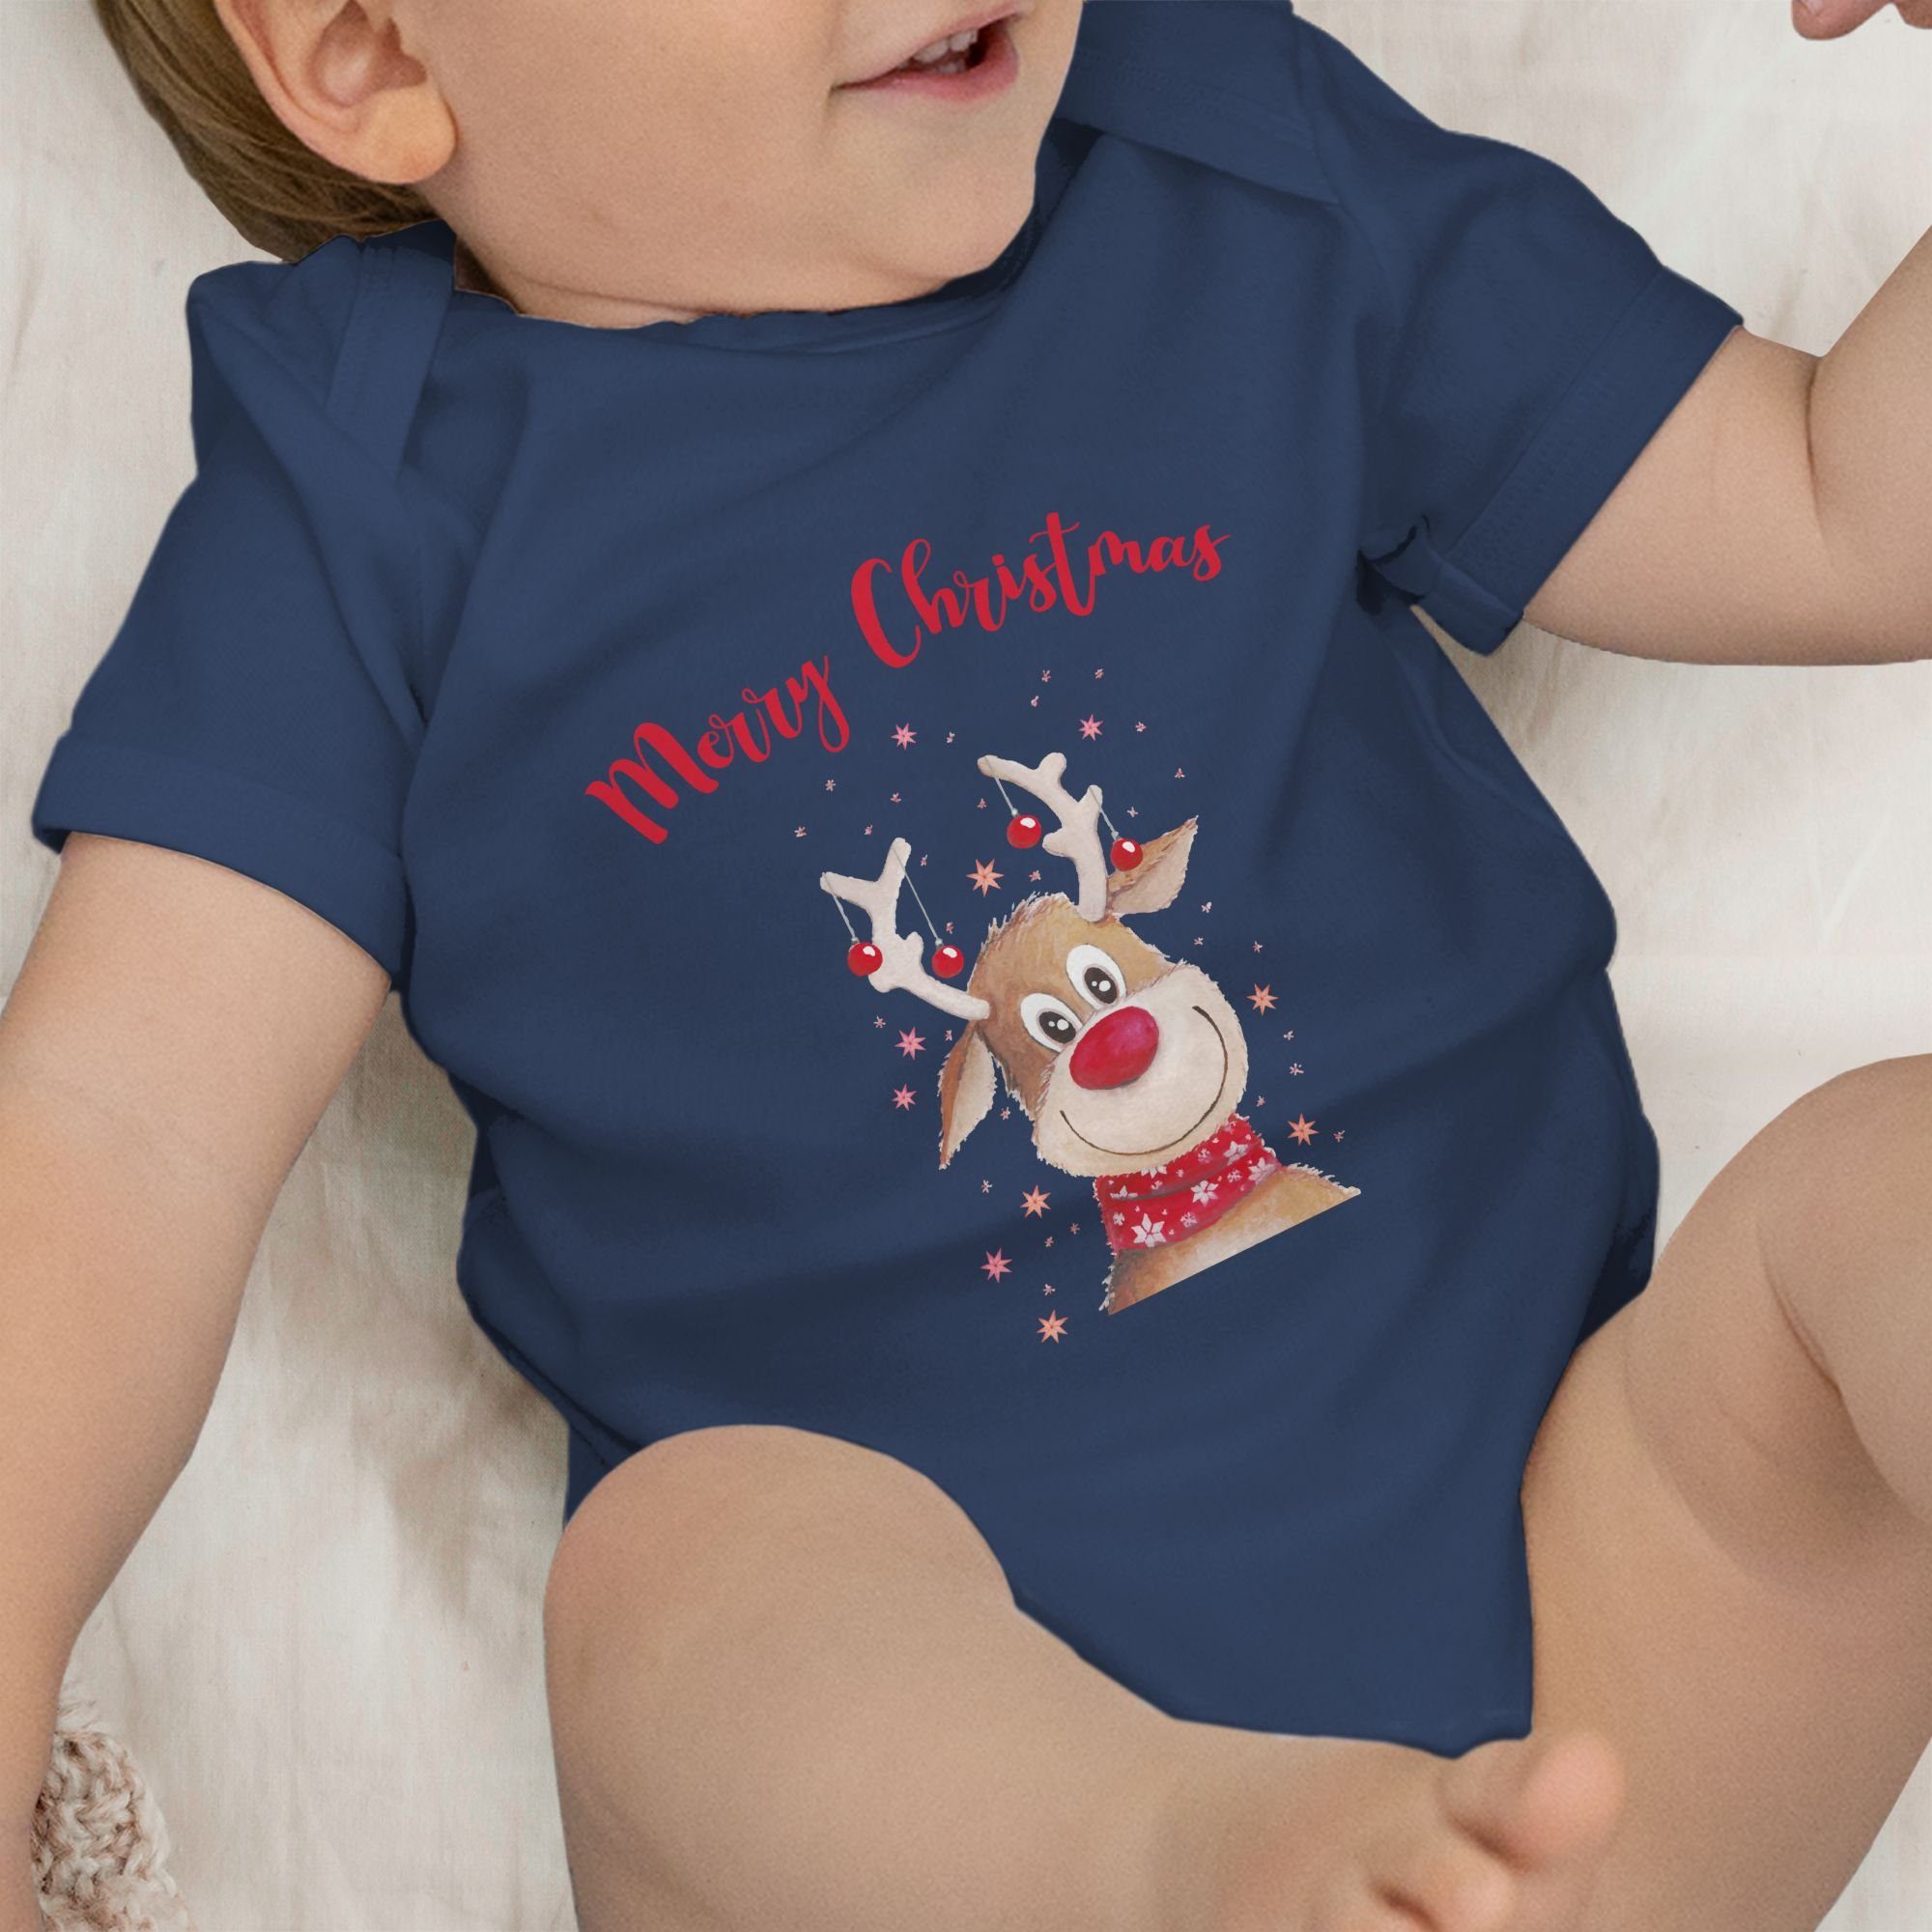 Shirtracer Kleidung Rentier Weihnachten Blau Sternen Shirtbody 3 mit Merry Christmas Navy Aquarell Baby